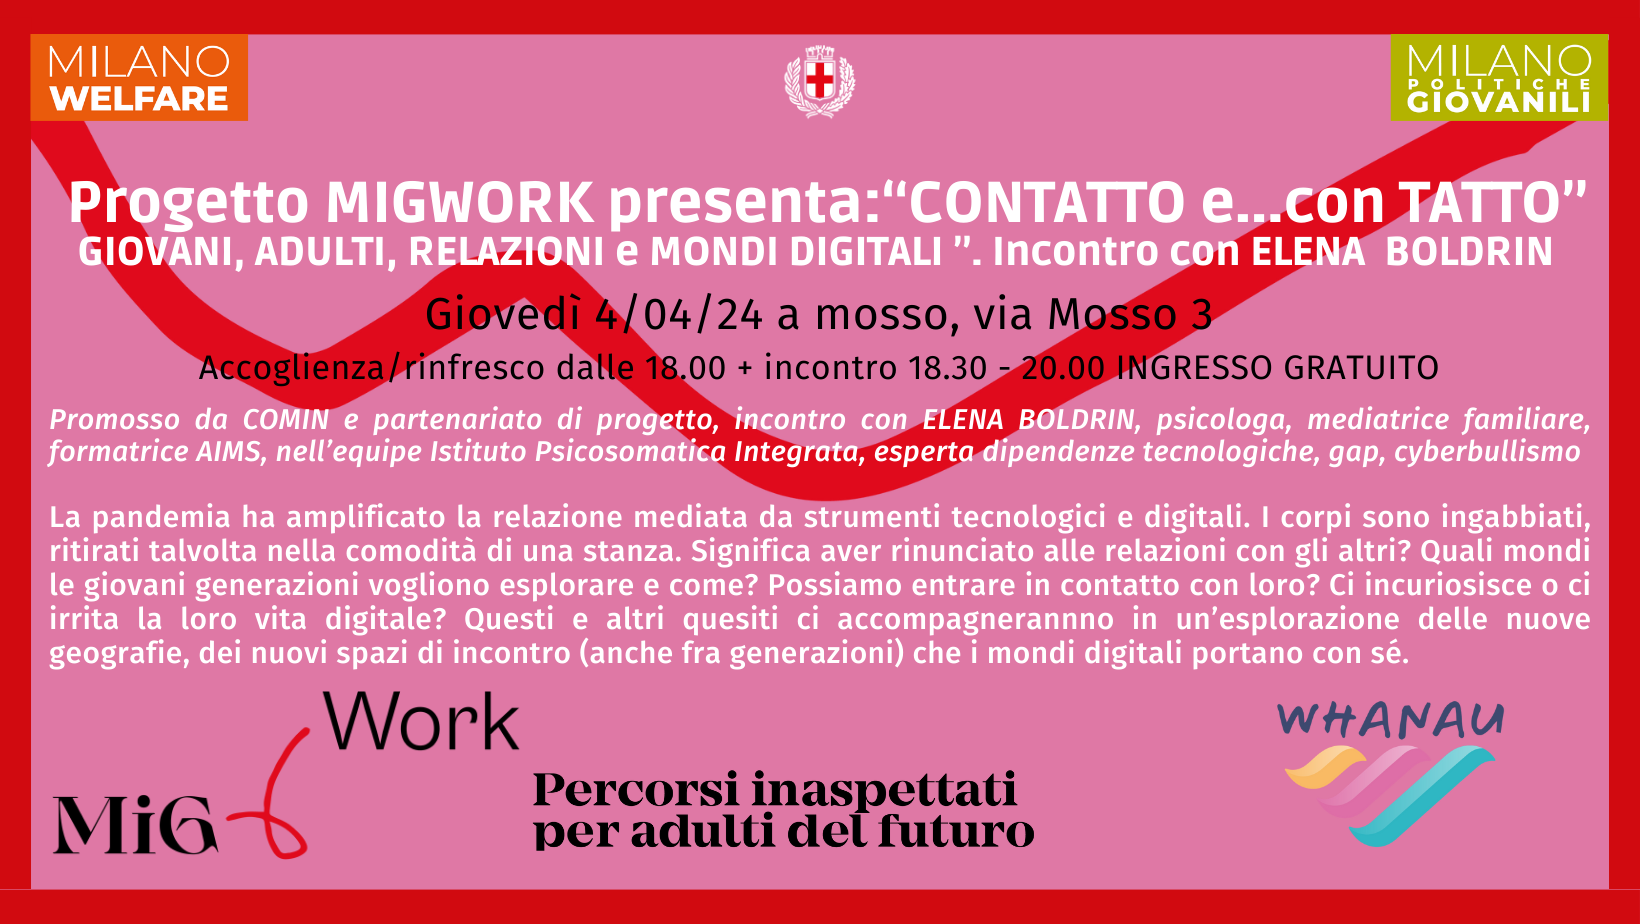 Migwork presenta "Contatto e Con...Tatto" 4apr24